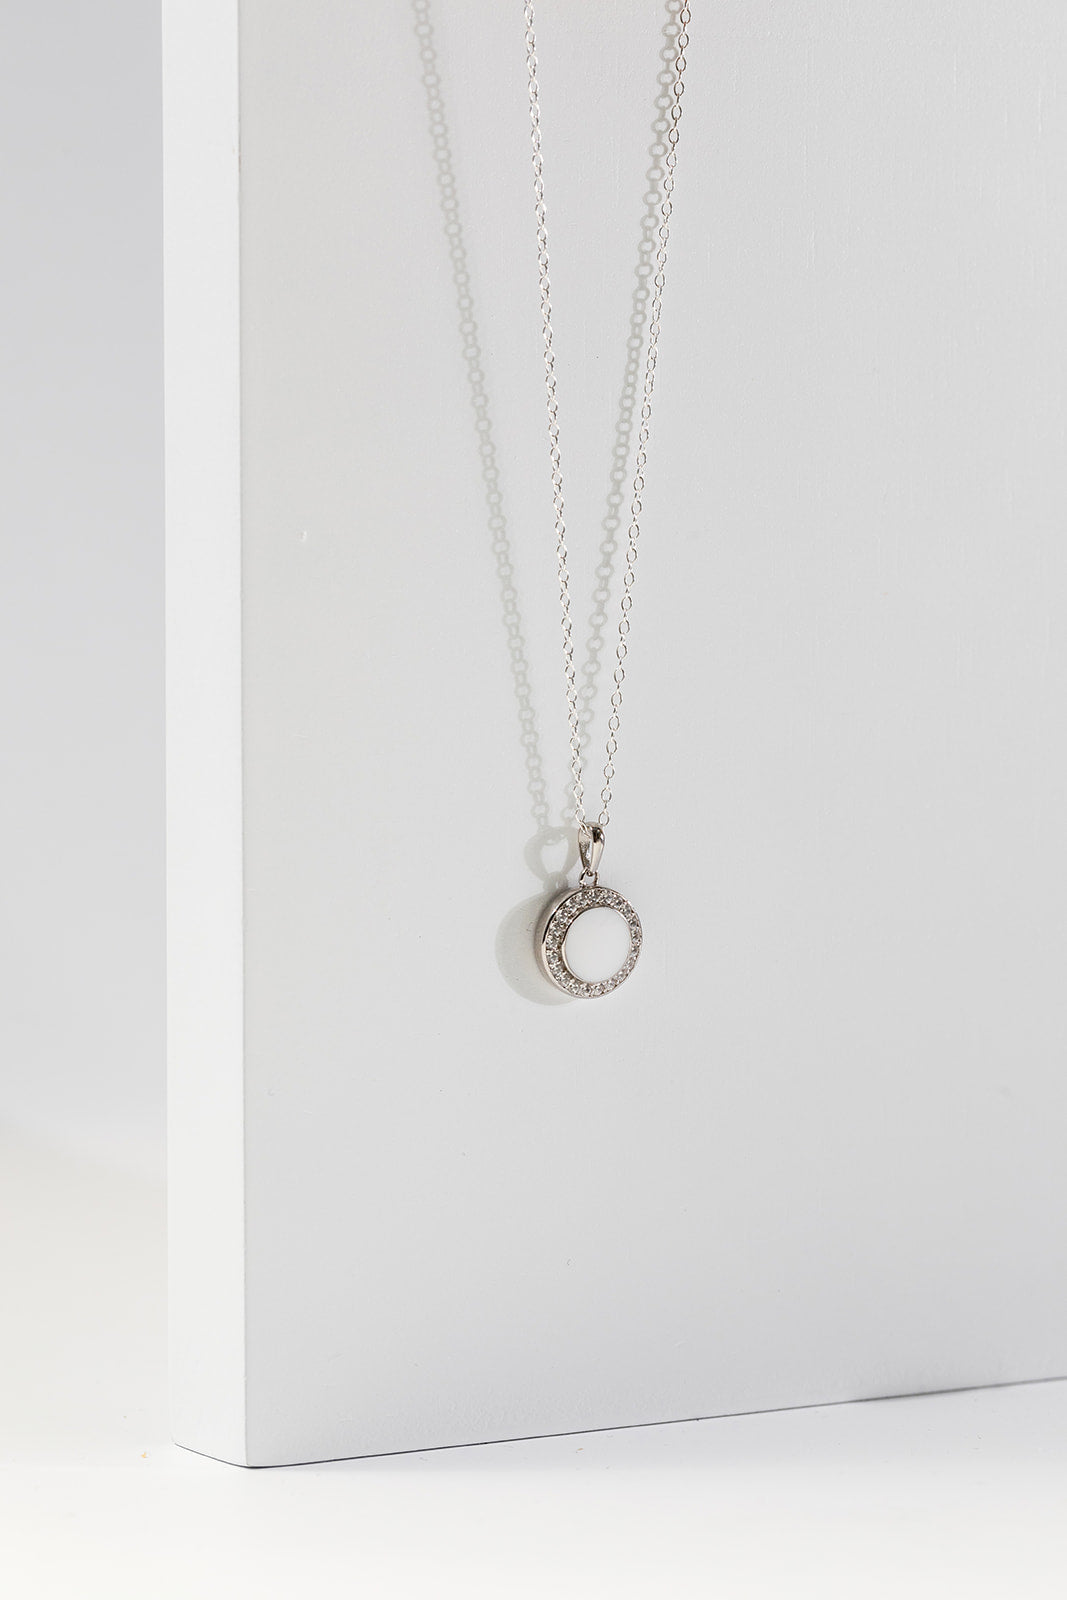 Breastmilk Halo Necklace - Silver 